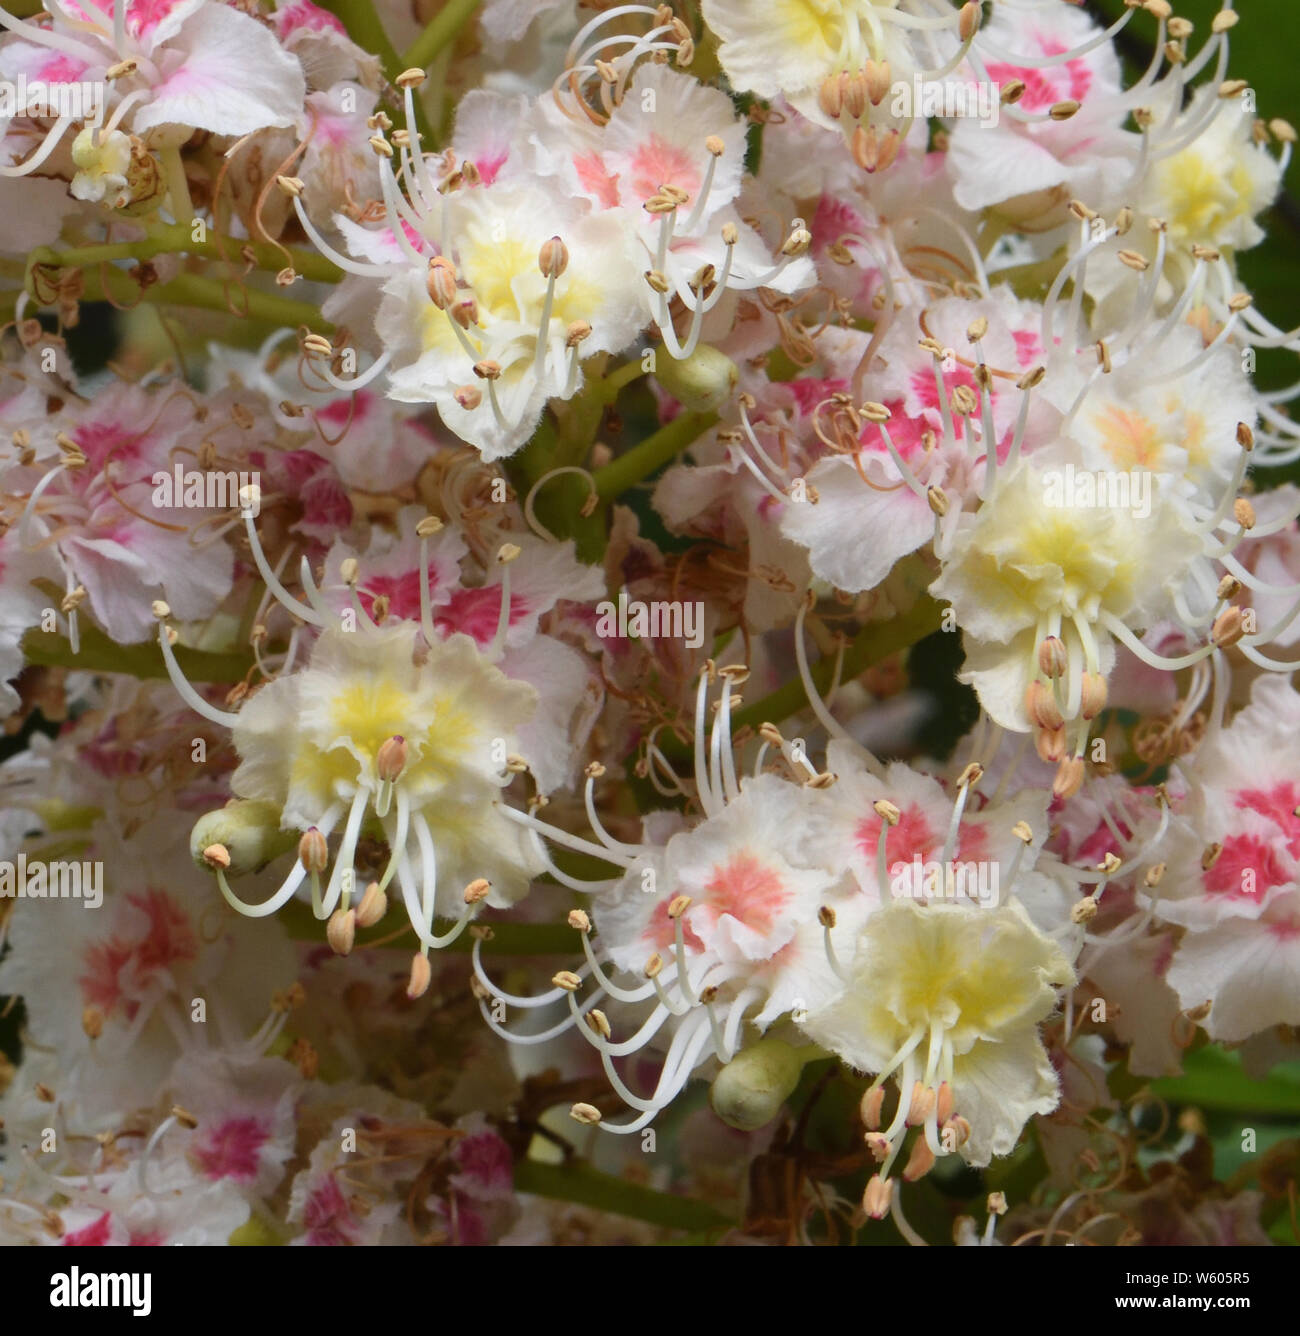 Una varietà coltivata di ippocastano (Aesculus hippocastanum) con grandi fiori decorativi rosa e giallo. Wimpole, Cambridgeshire, Regno Unito Foto Stock